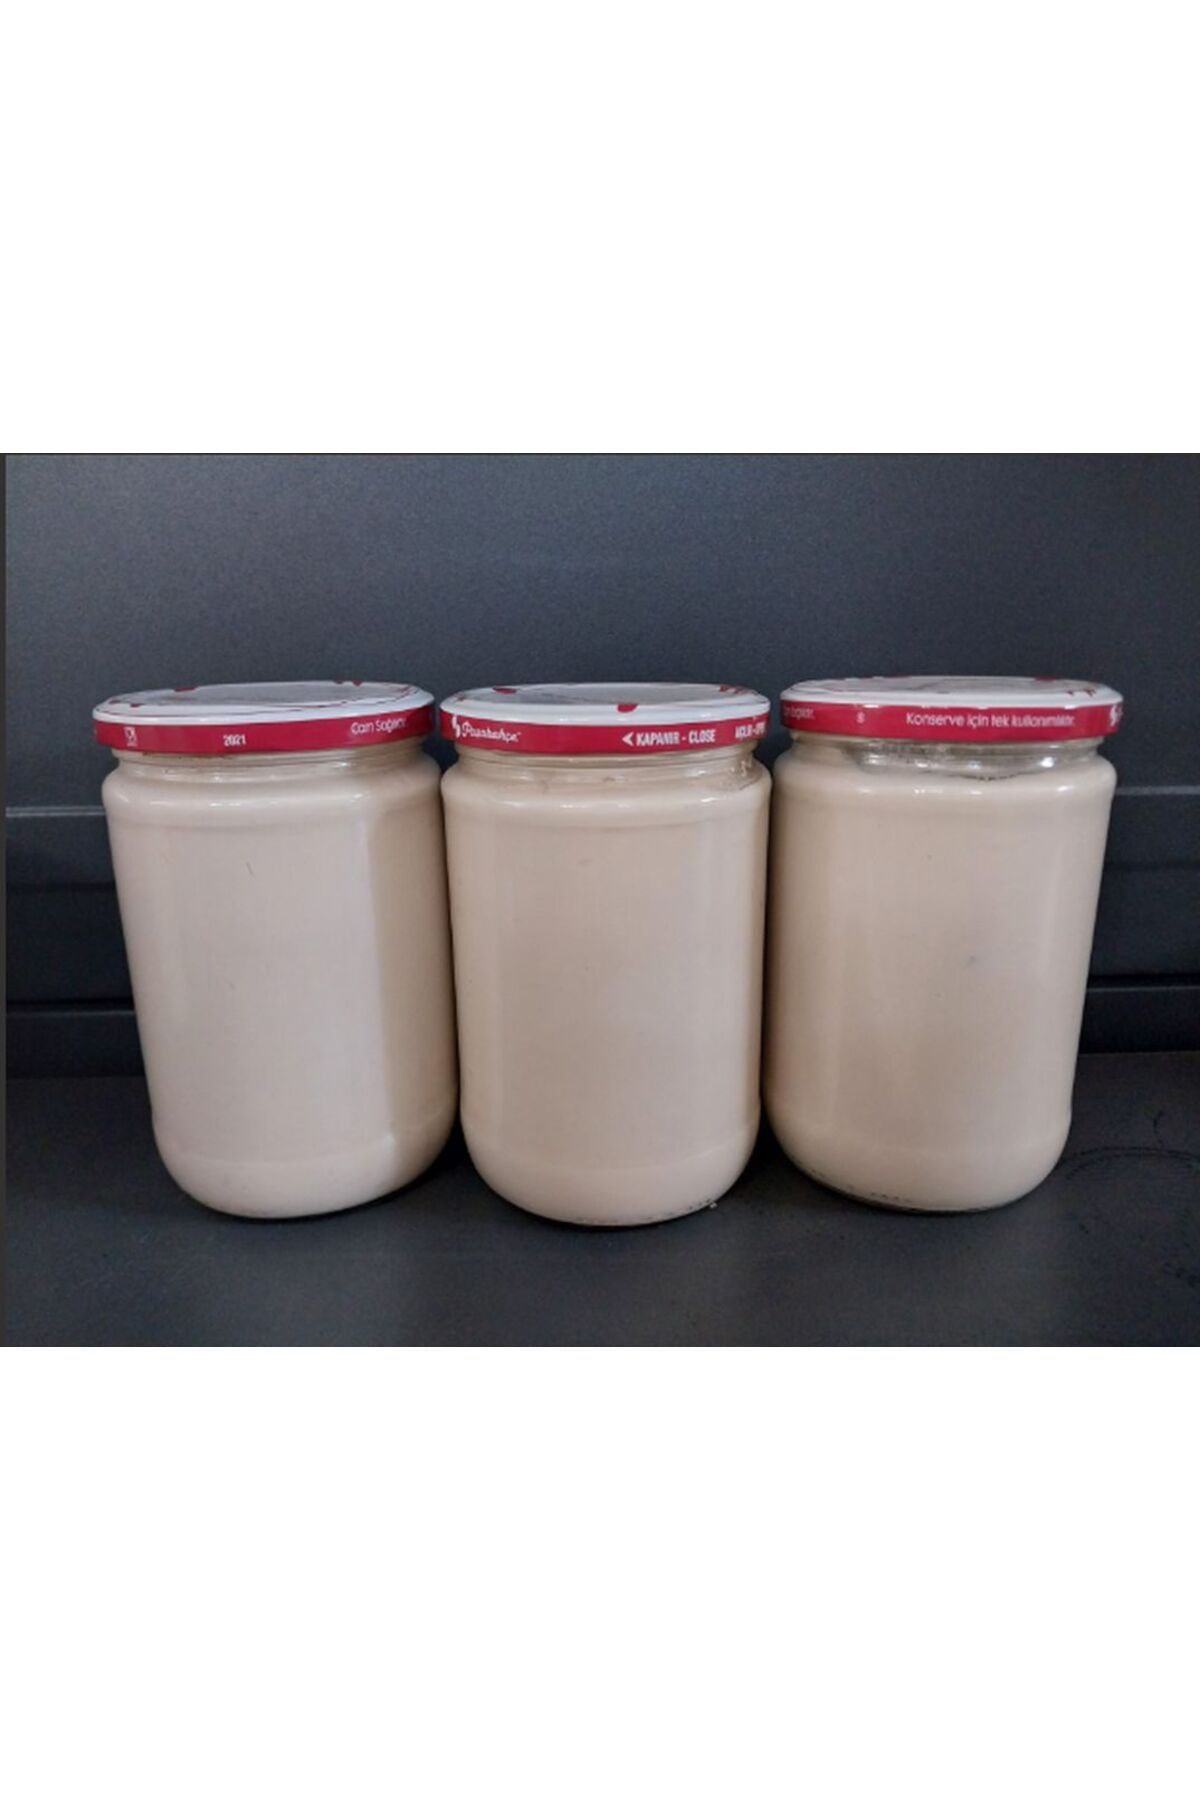 Gelinler Dağı Hatay Yöresel Tuzlu Yoğurt (%100 Keçi Sütlü) 660 cc x 3 Kavanoz (Avantajlı Al 3 Al 2 Öde)